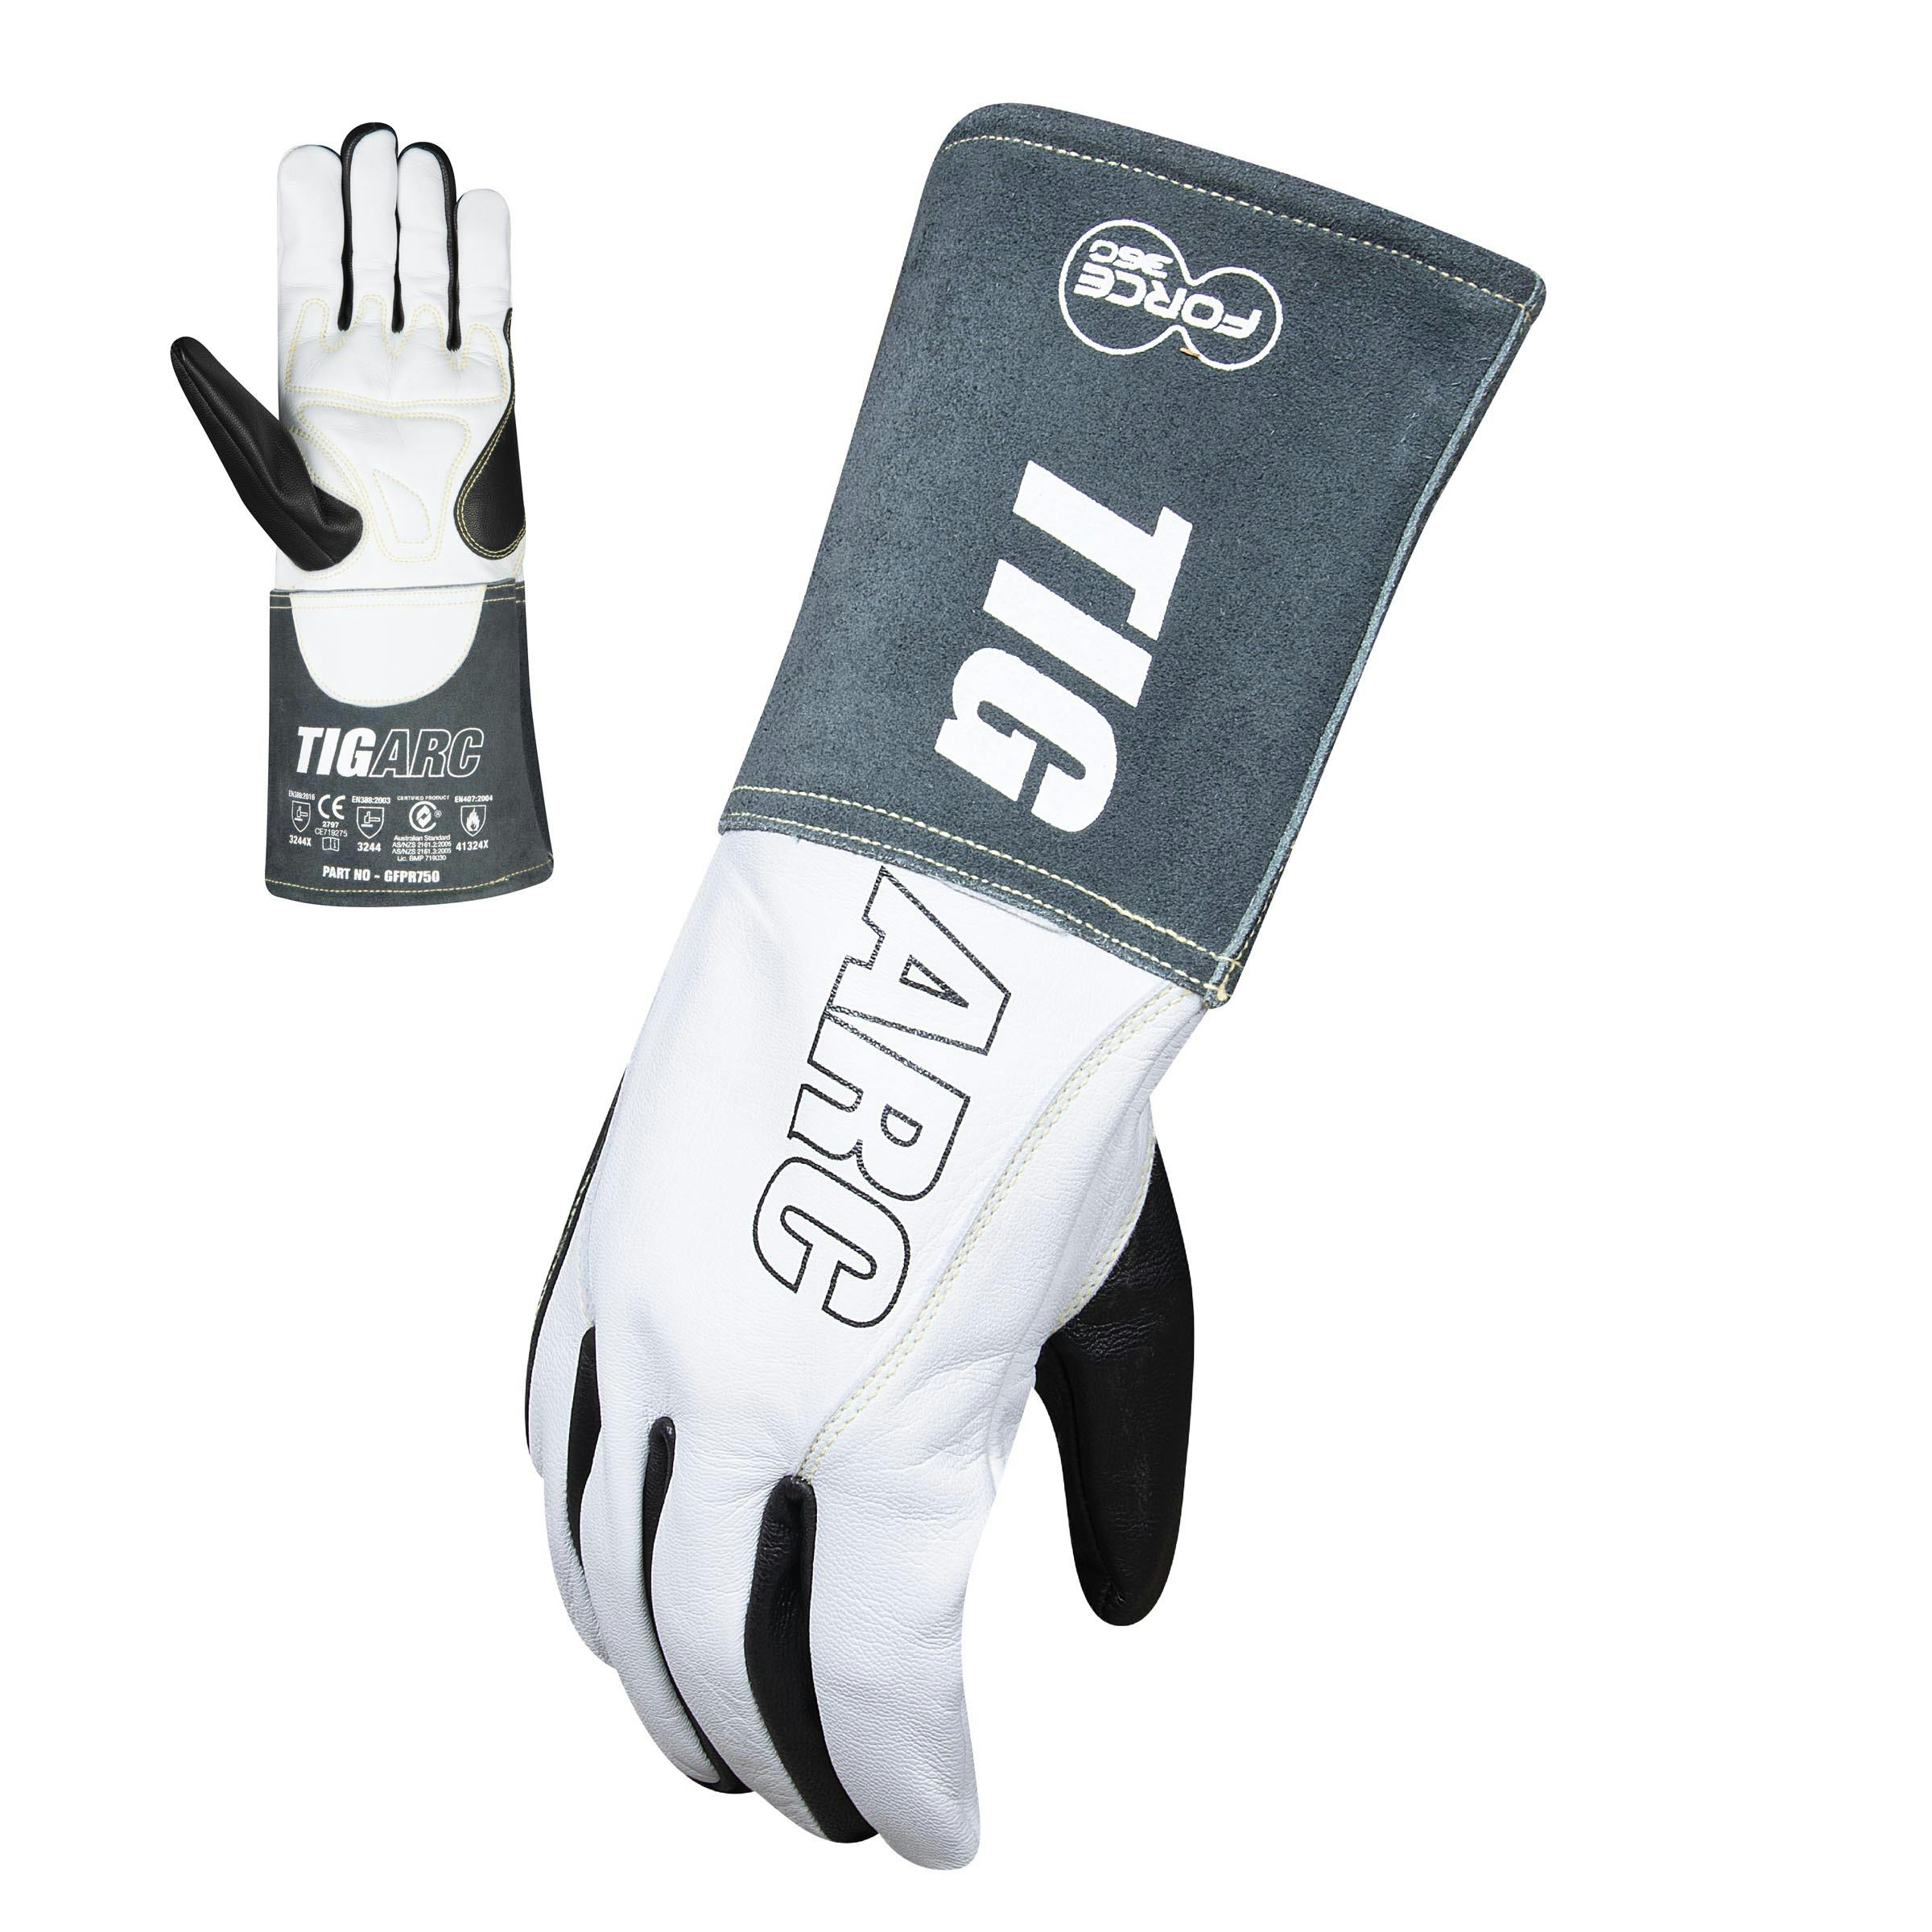 Force360 TigArc Welders Glove